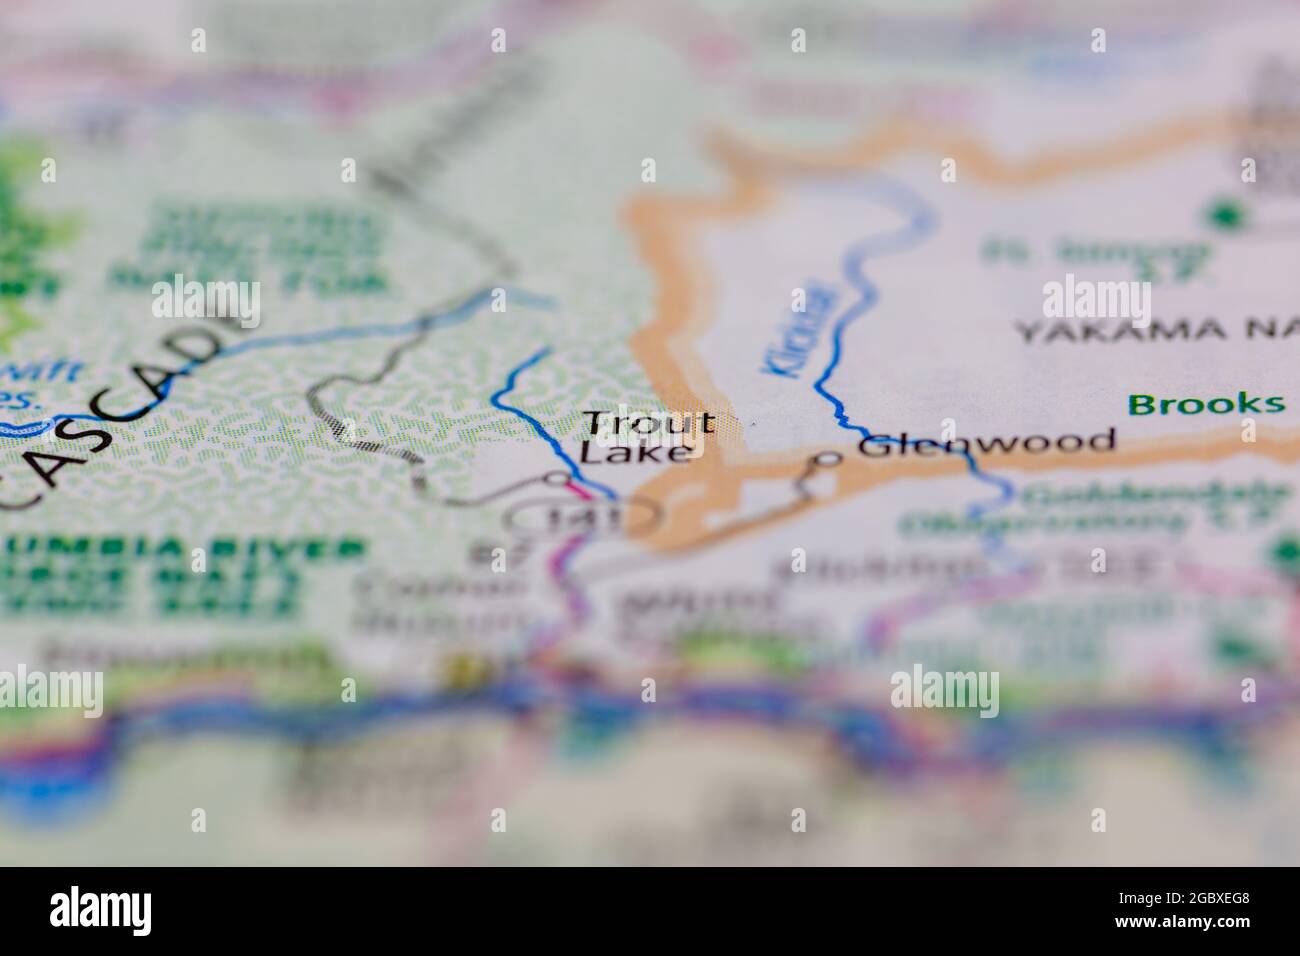 Forelle Lake Washington State USA auf einer Straßenkarte oder Geografie-Karte angezeigt Stockfoto